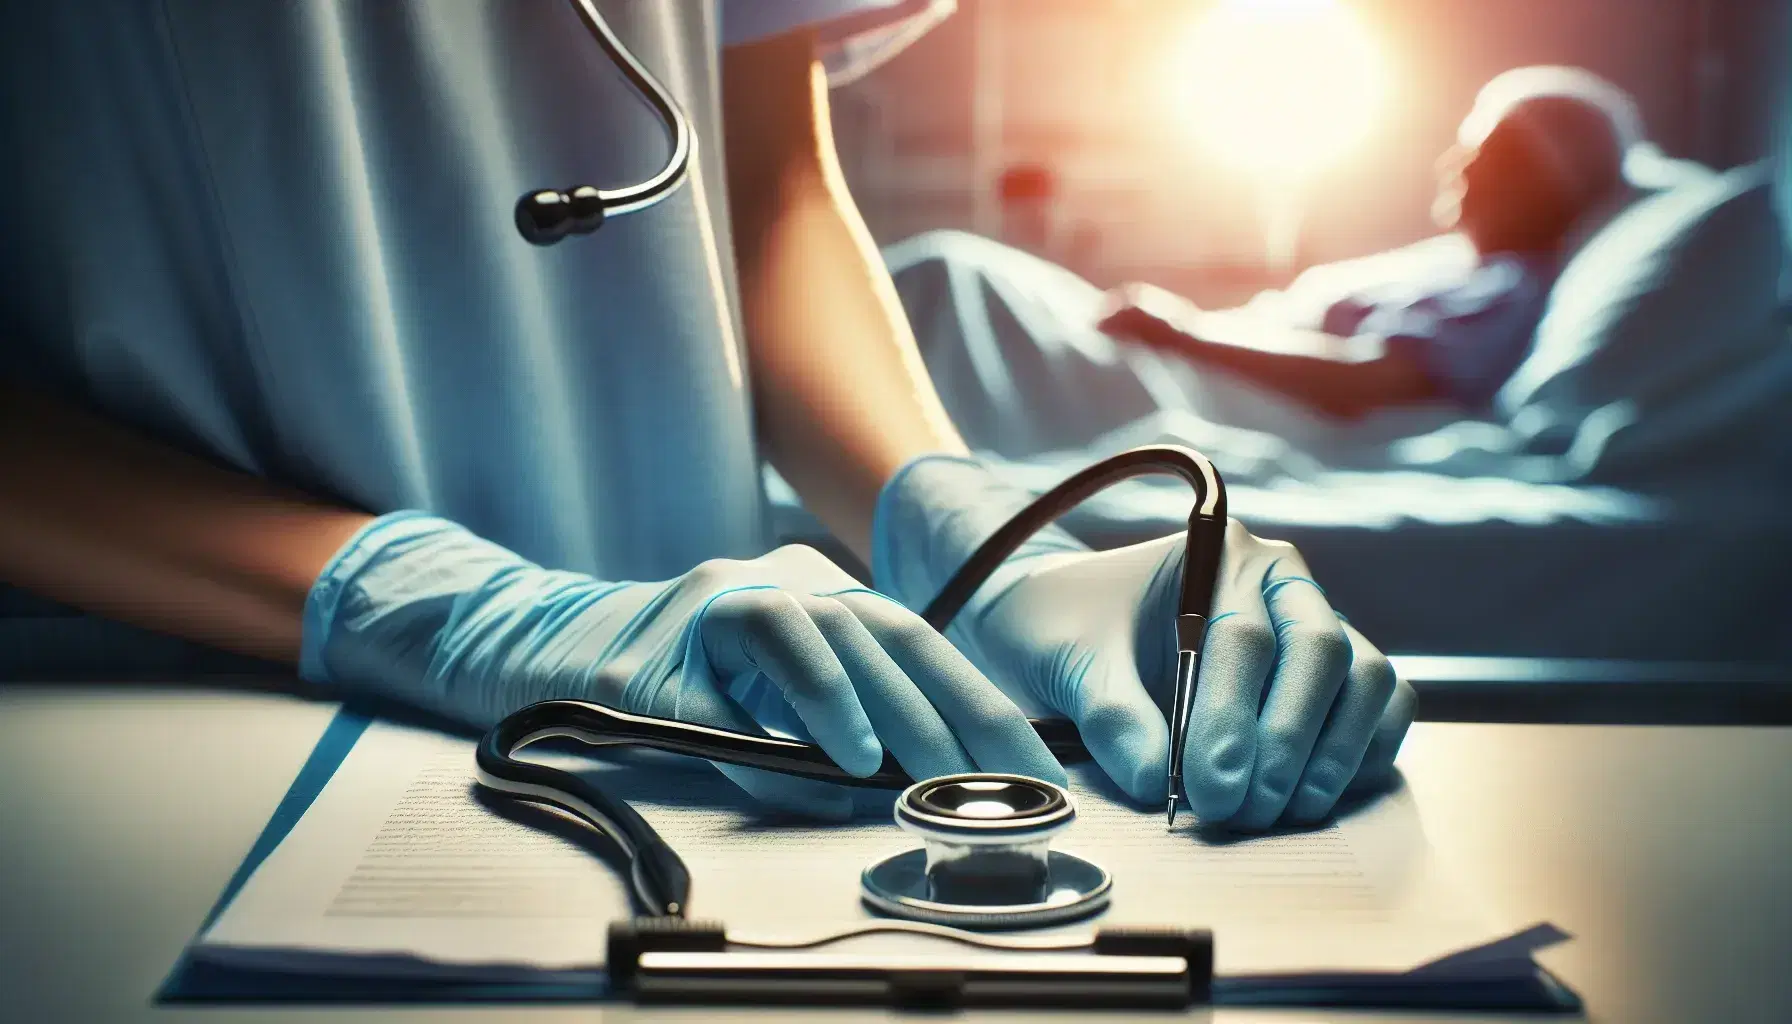 Manos de enfermera con guantes azules sosteniendo un estetoscopio, con hoja en blanco y bolígrafo al lado, paciente desenfocado al fondo.